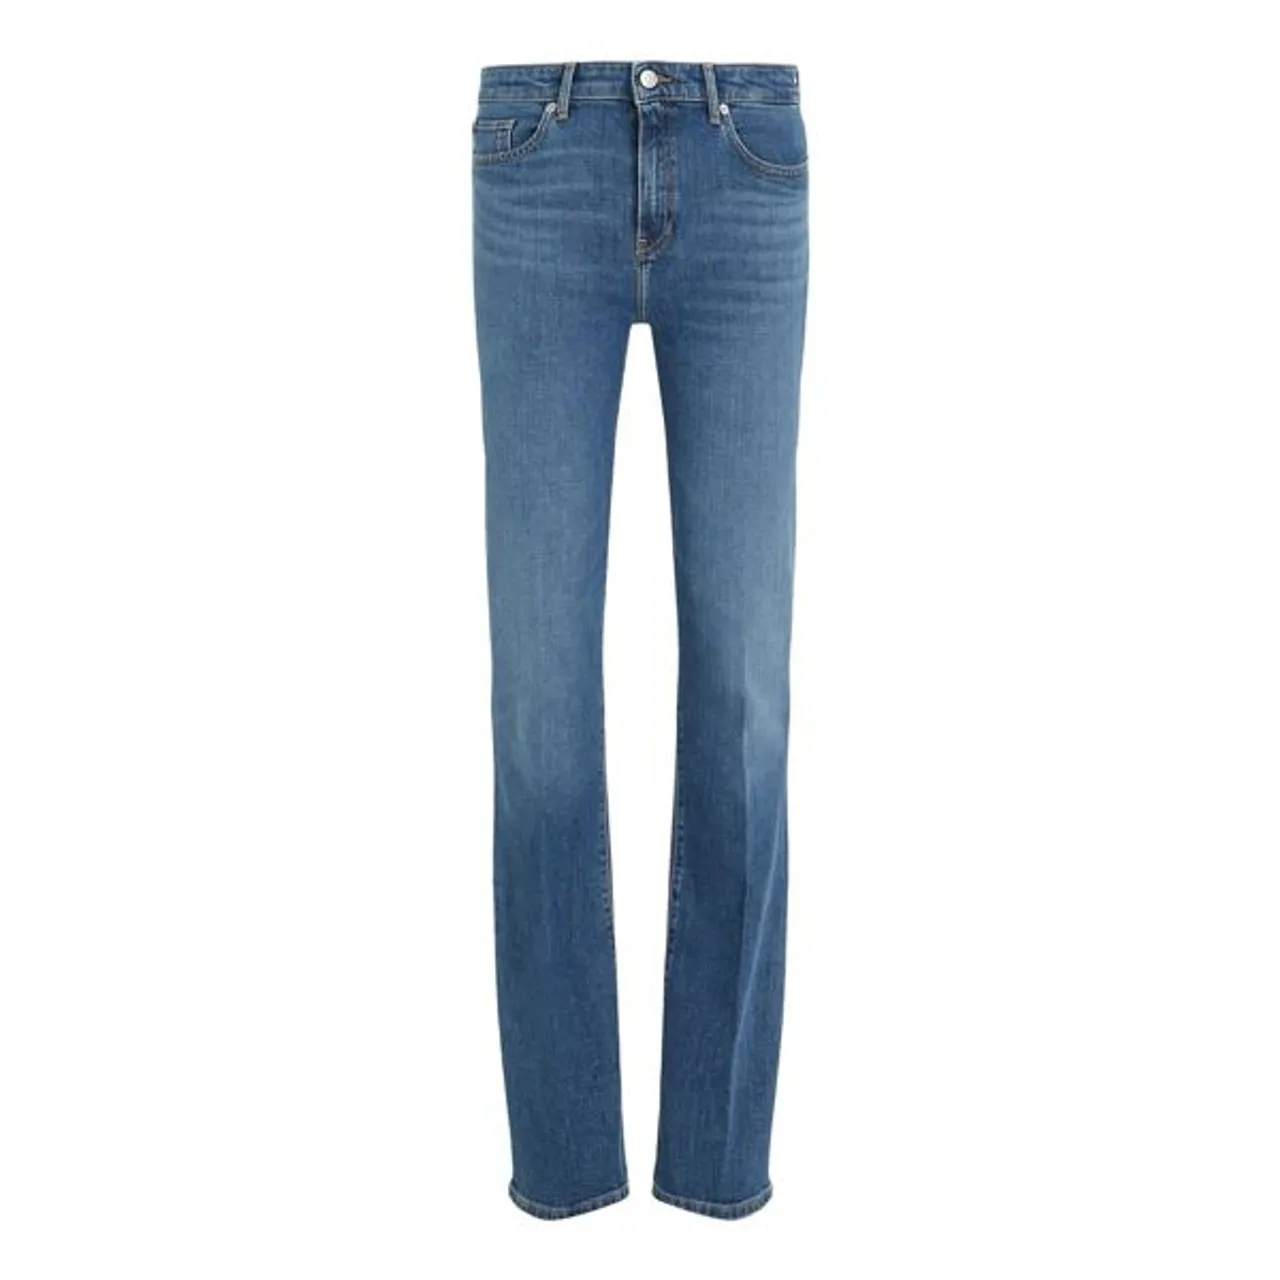 Bootcut-Jeans TOMMY HILFIGER Gr. 29, Länge 30, blau (mel) Damen Jeans Bootcut